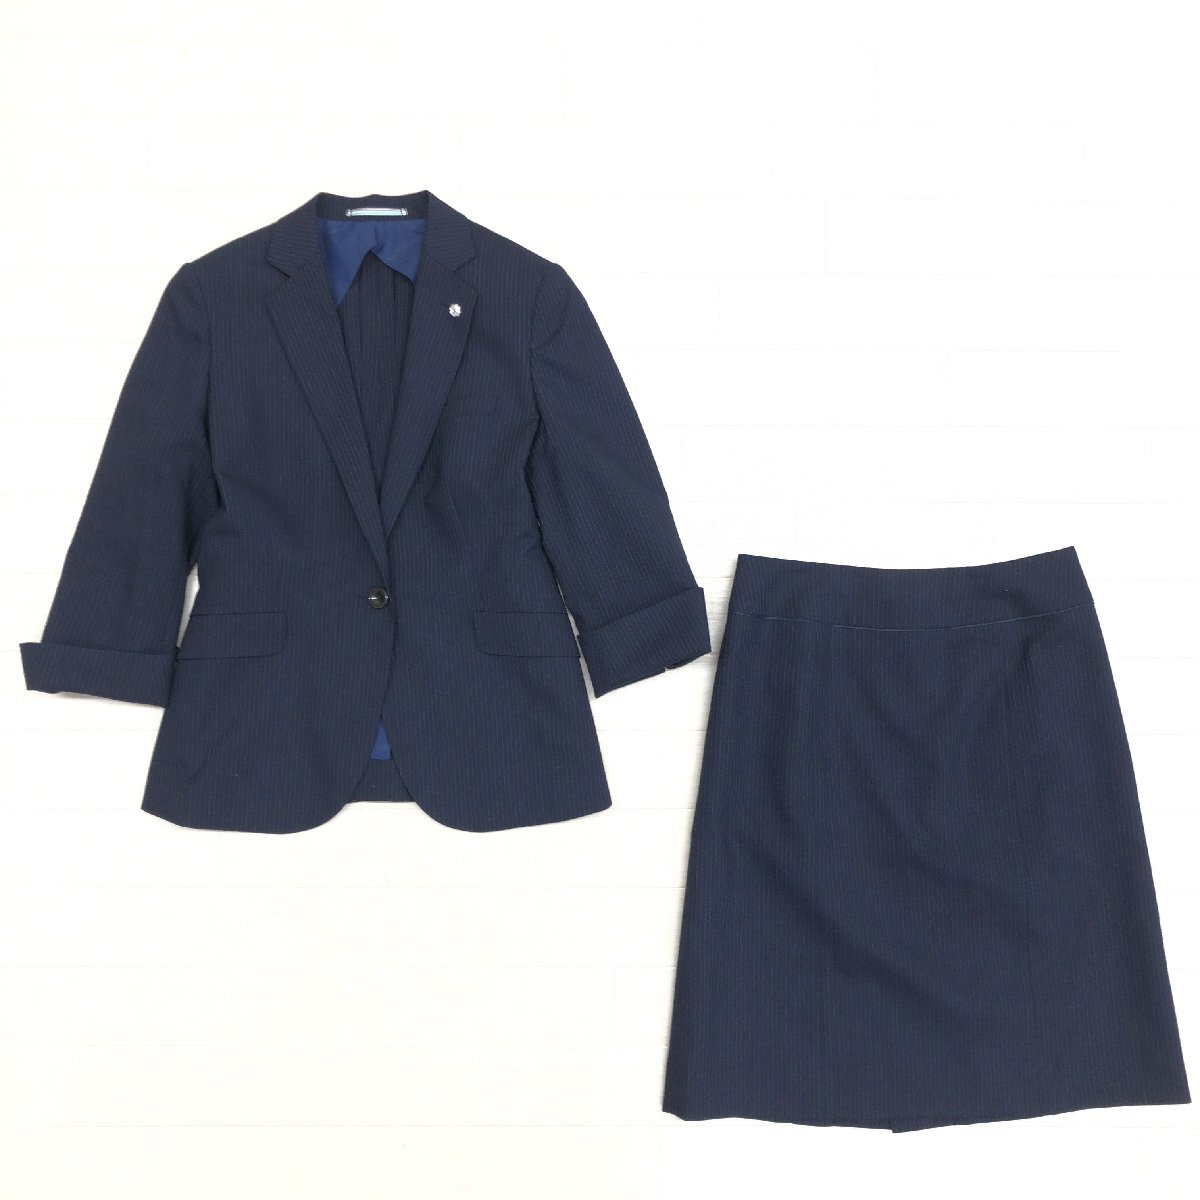 ●ORIHICA RHYME オリヒカ ウォッシャブル 1B スカートスーツ 7(S) 濃紺 ネイビー ジャケット 七分袖 春夏用 国内正規品 レディース 女性用の画像1